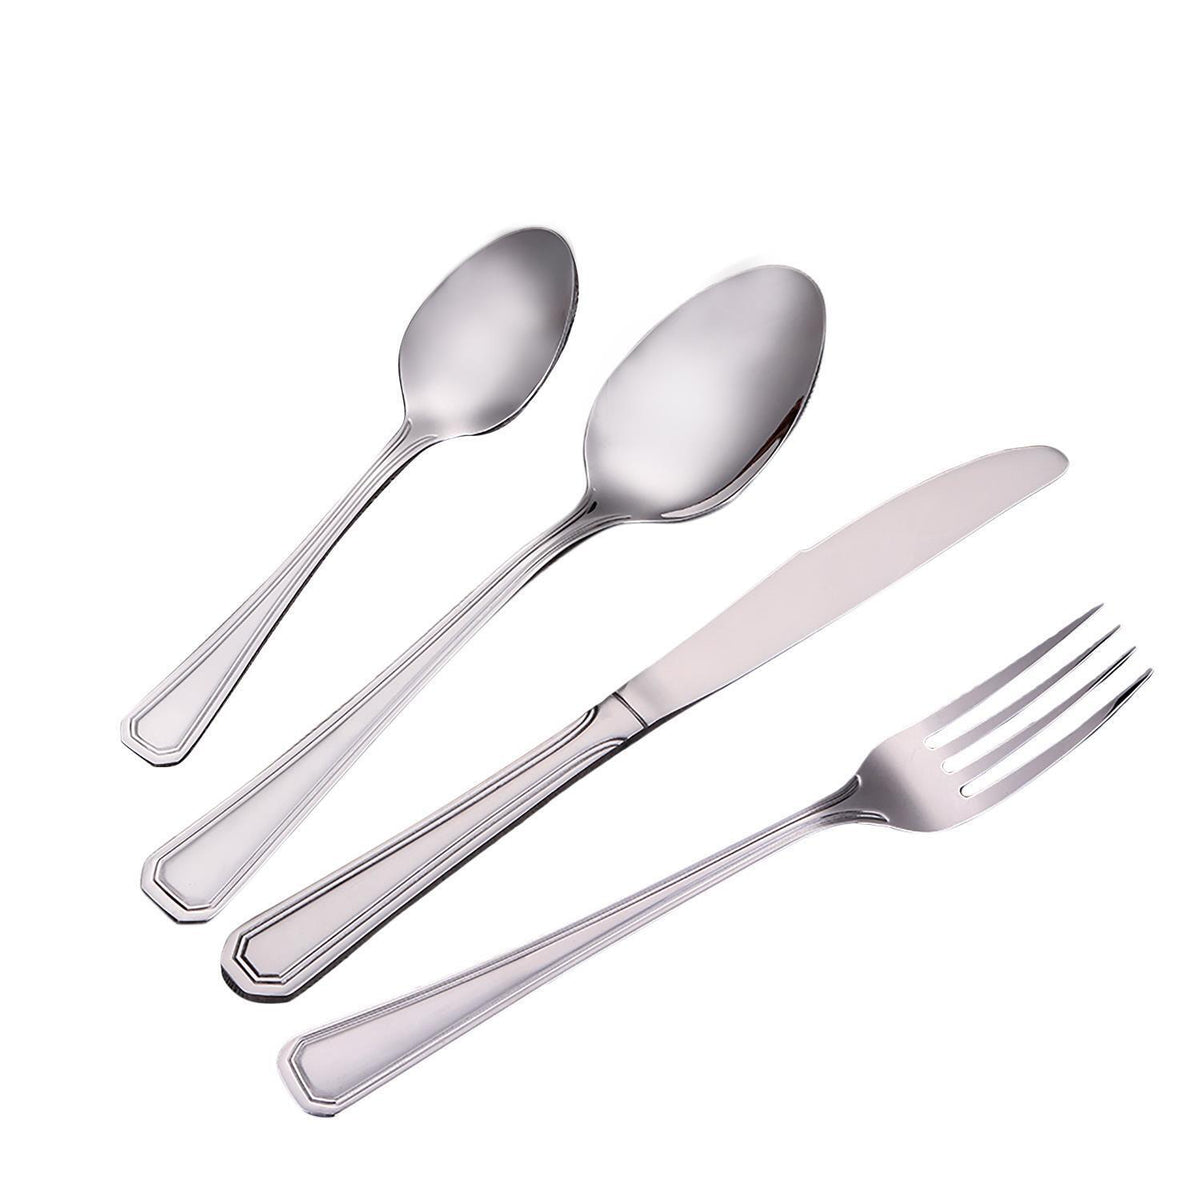 16-Piece Stainless Steel Tableware Cutlery Set